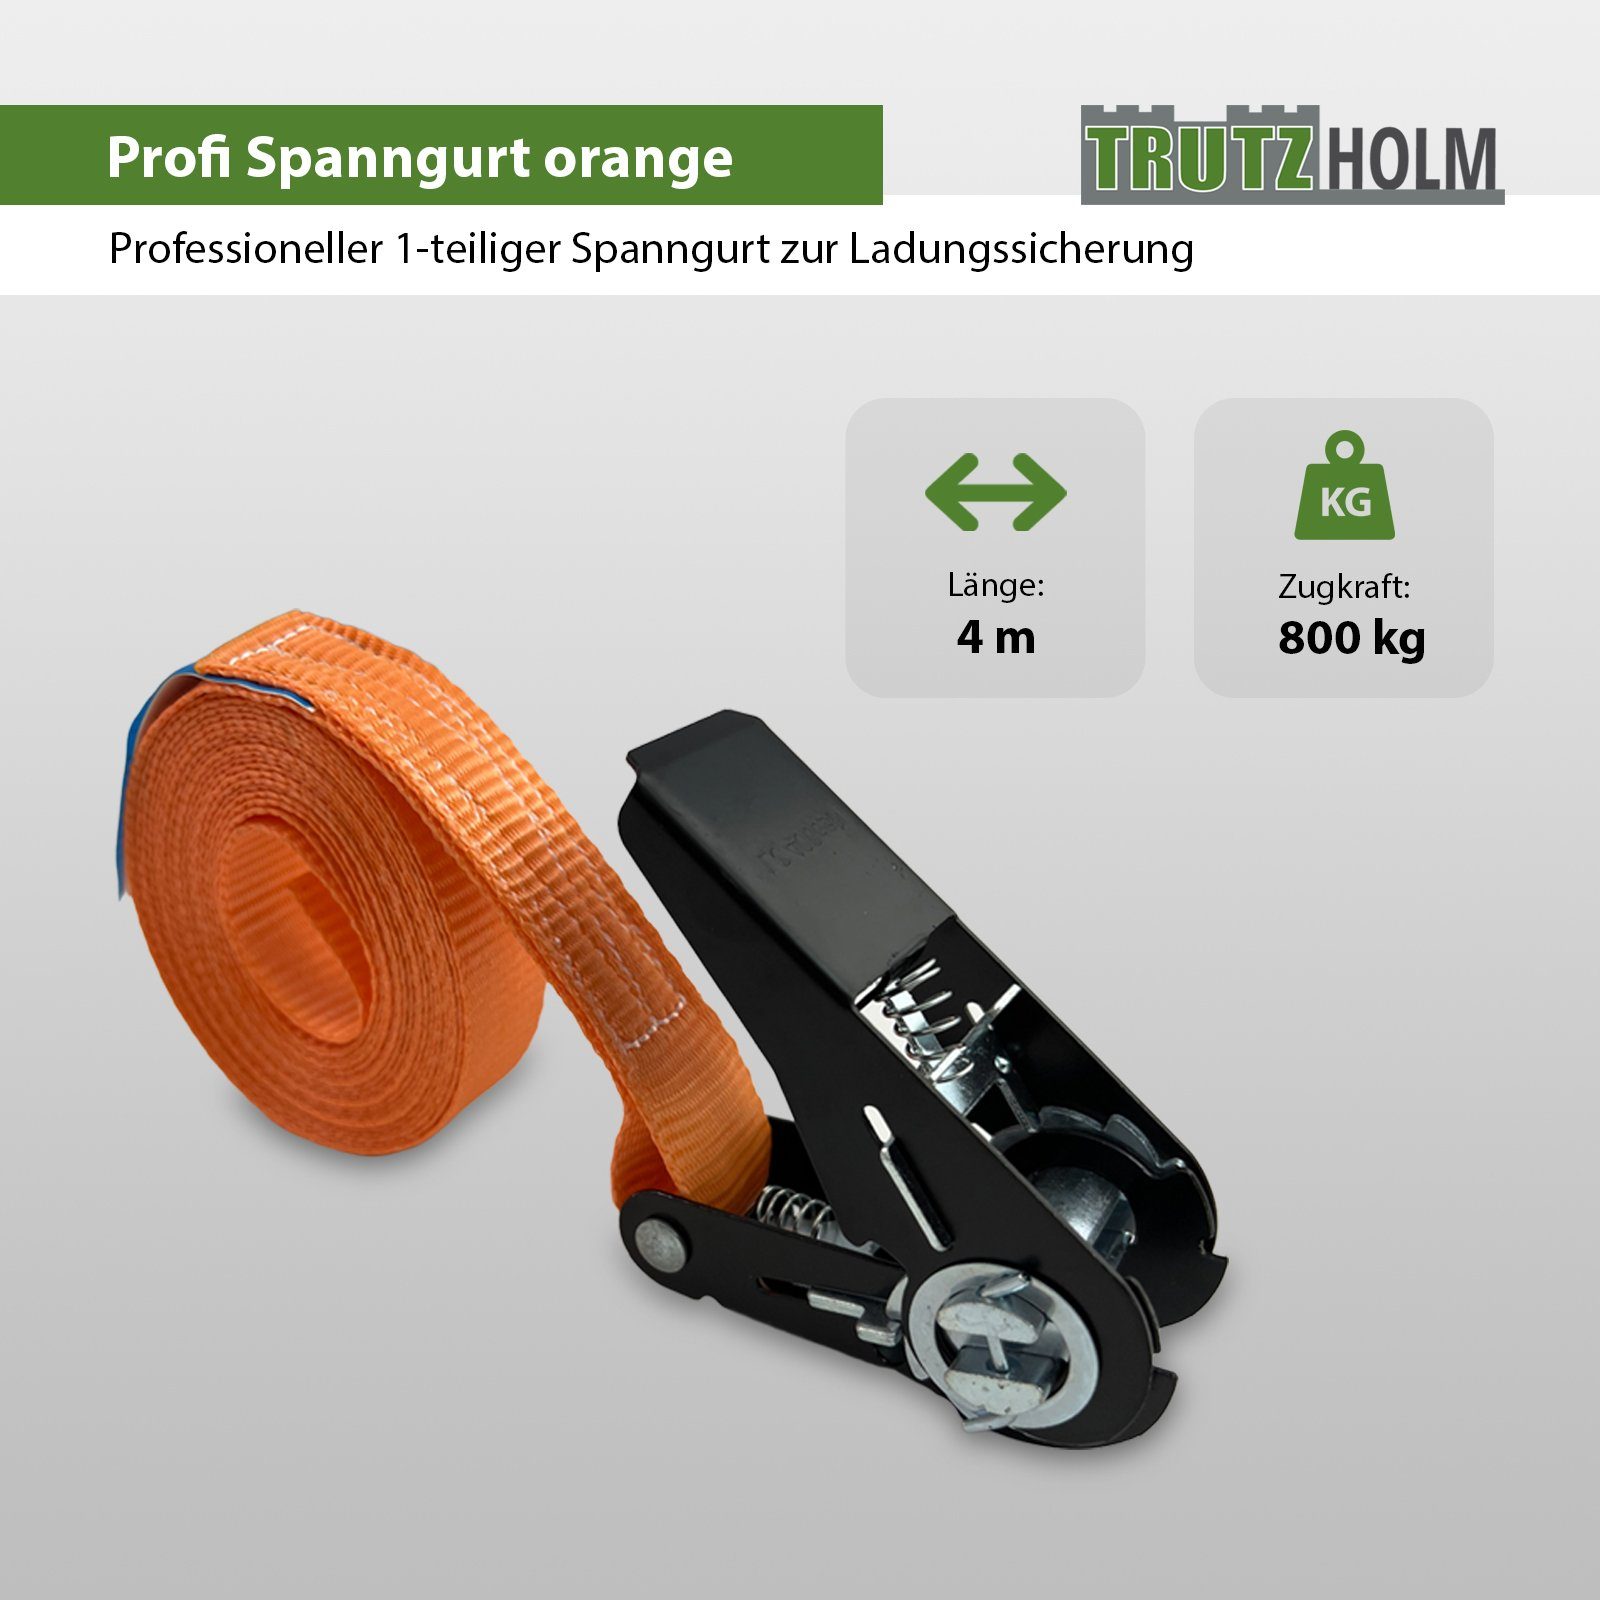 TRUTZHOLM Spanngurt 0,8t 5x Spanngurt 800kg Ratschen 1-tlg Schwarzes (Set) Orange 4m Spanngurte